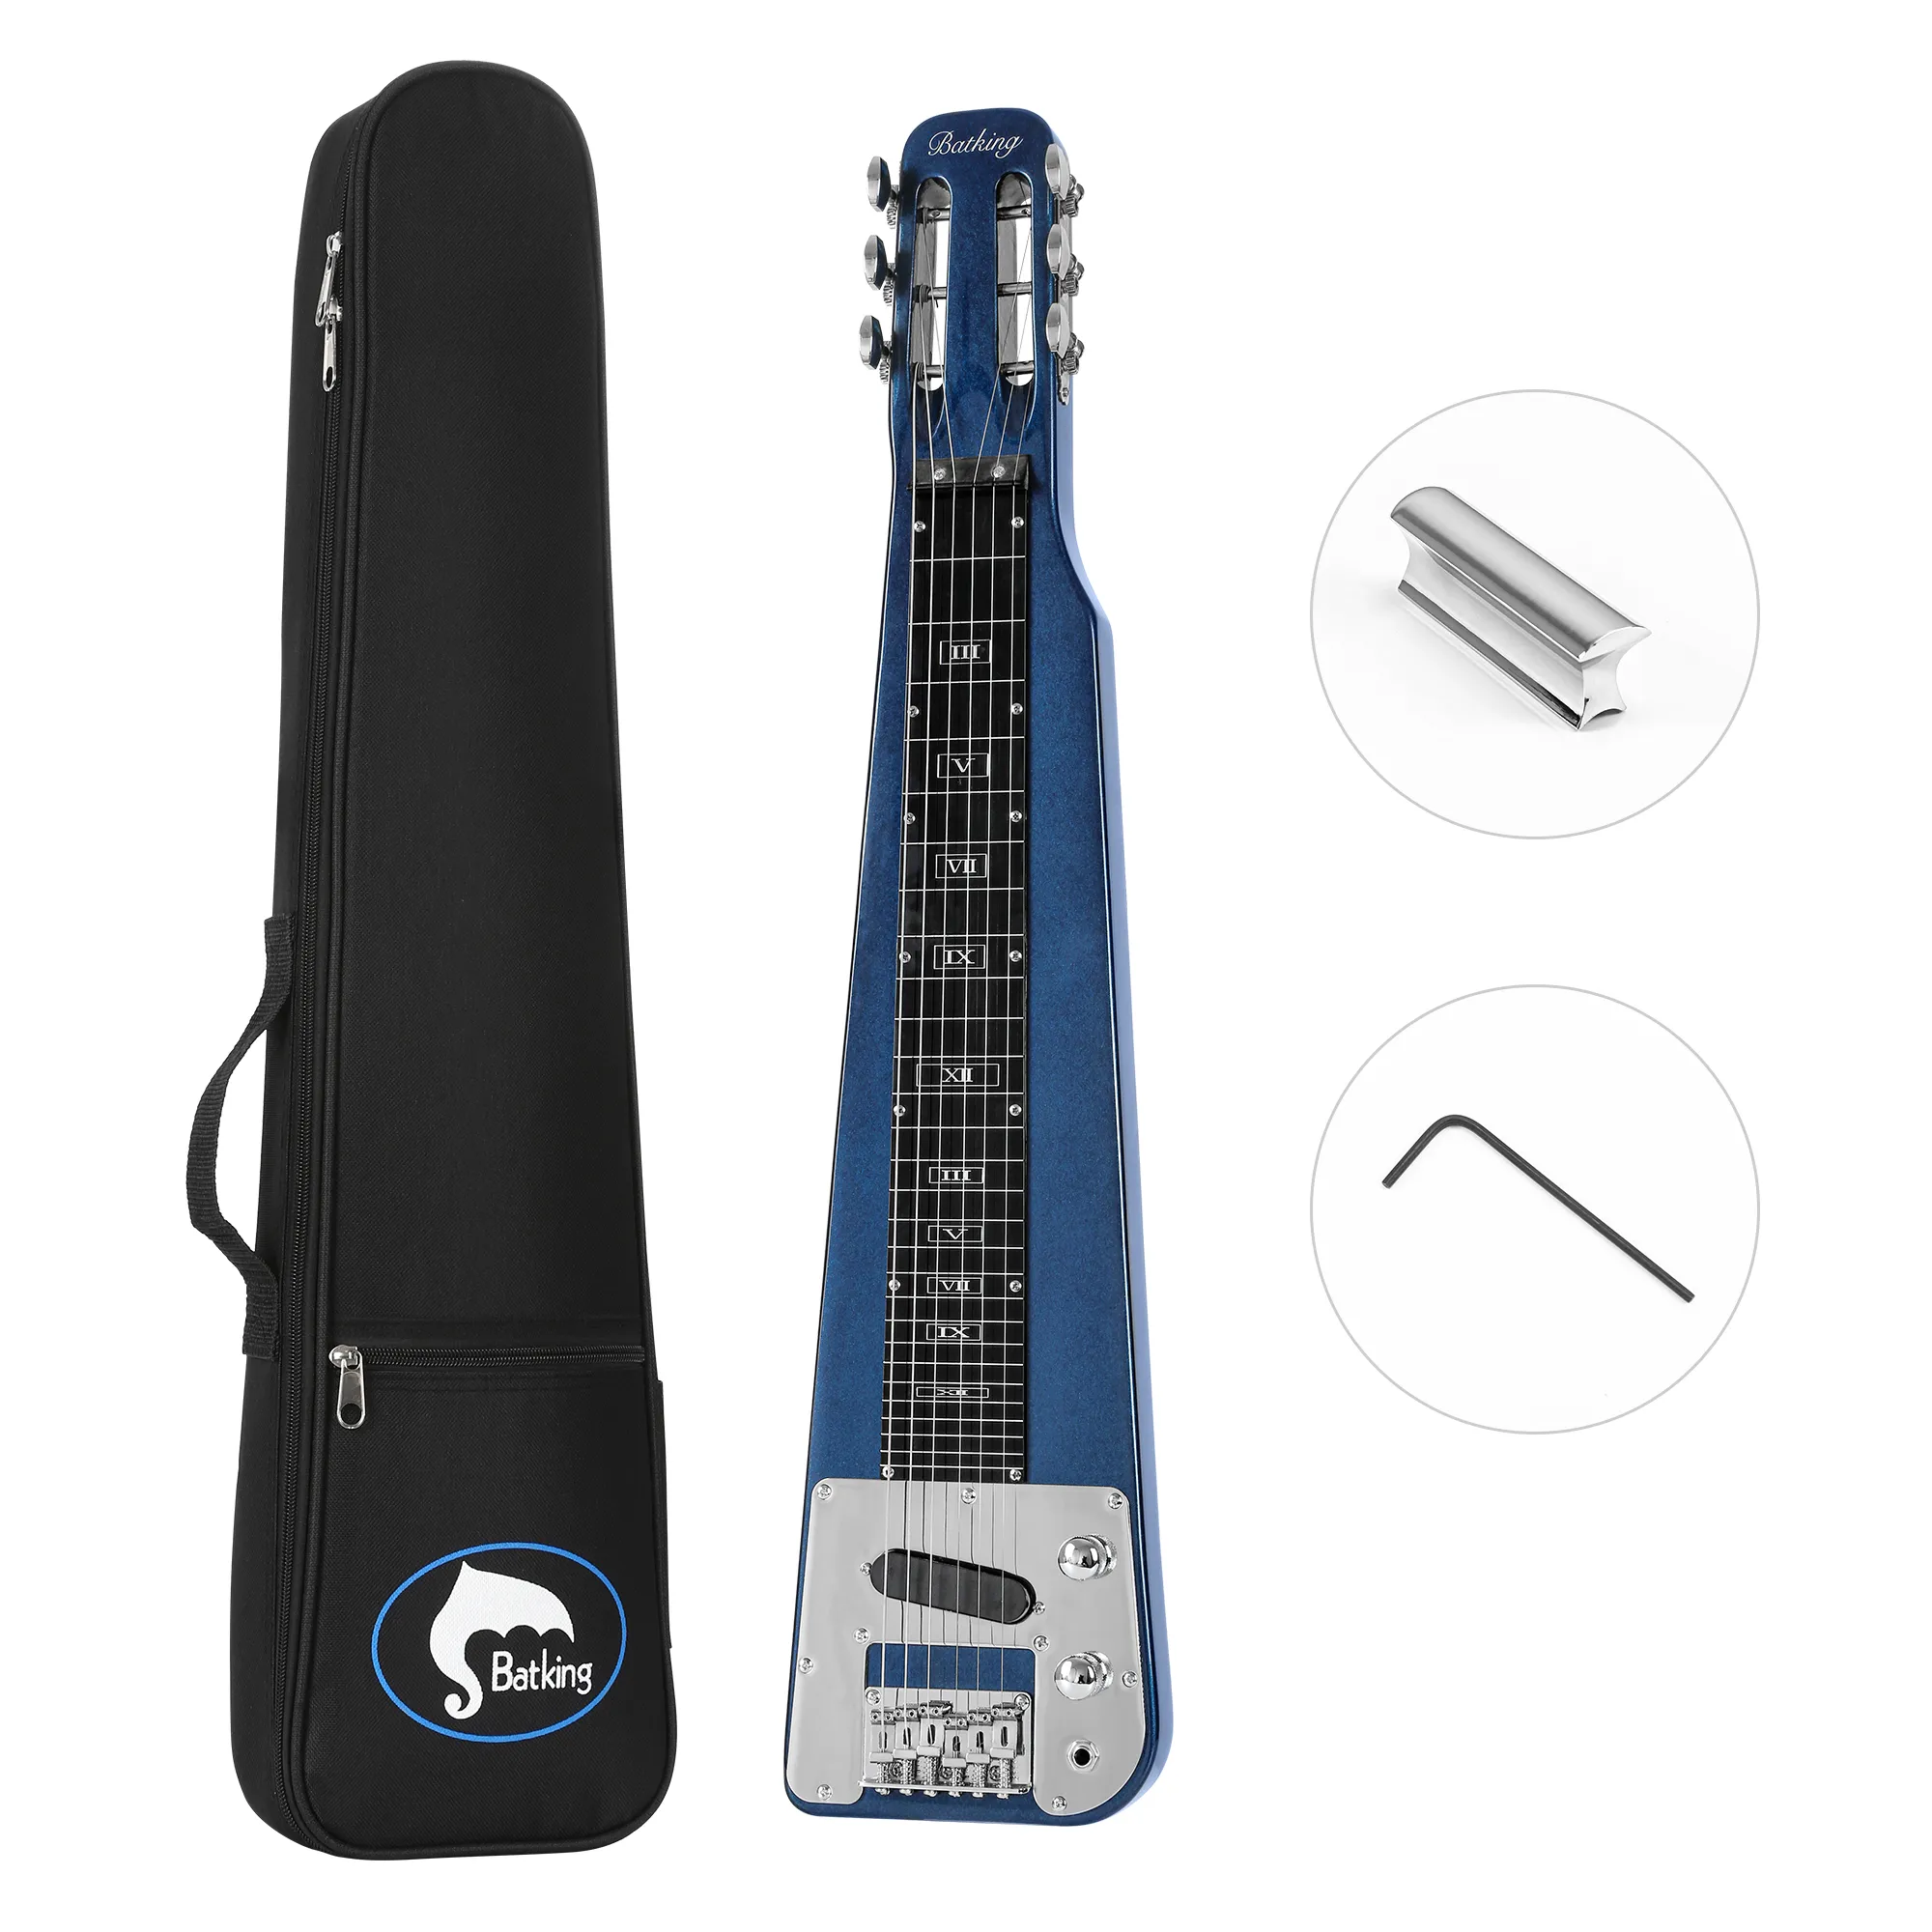 Guitarra de lâmina de aço de lap em cor azul escuro Musoo 6 cordas de cabeça com ranhura de estoque de guitarra elétrica